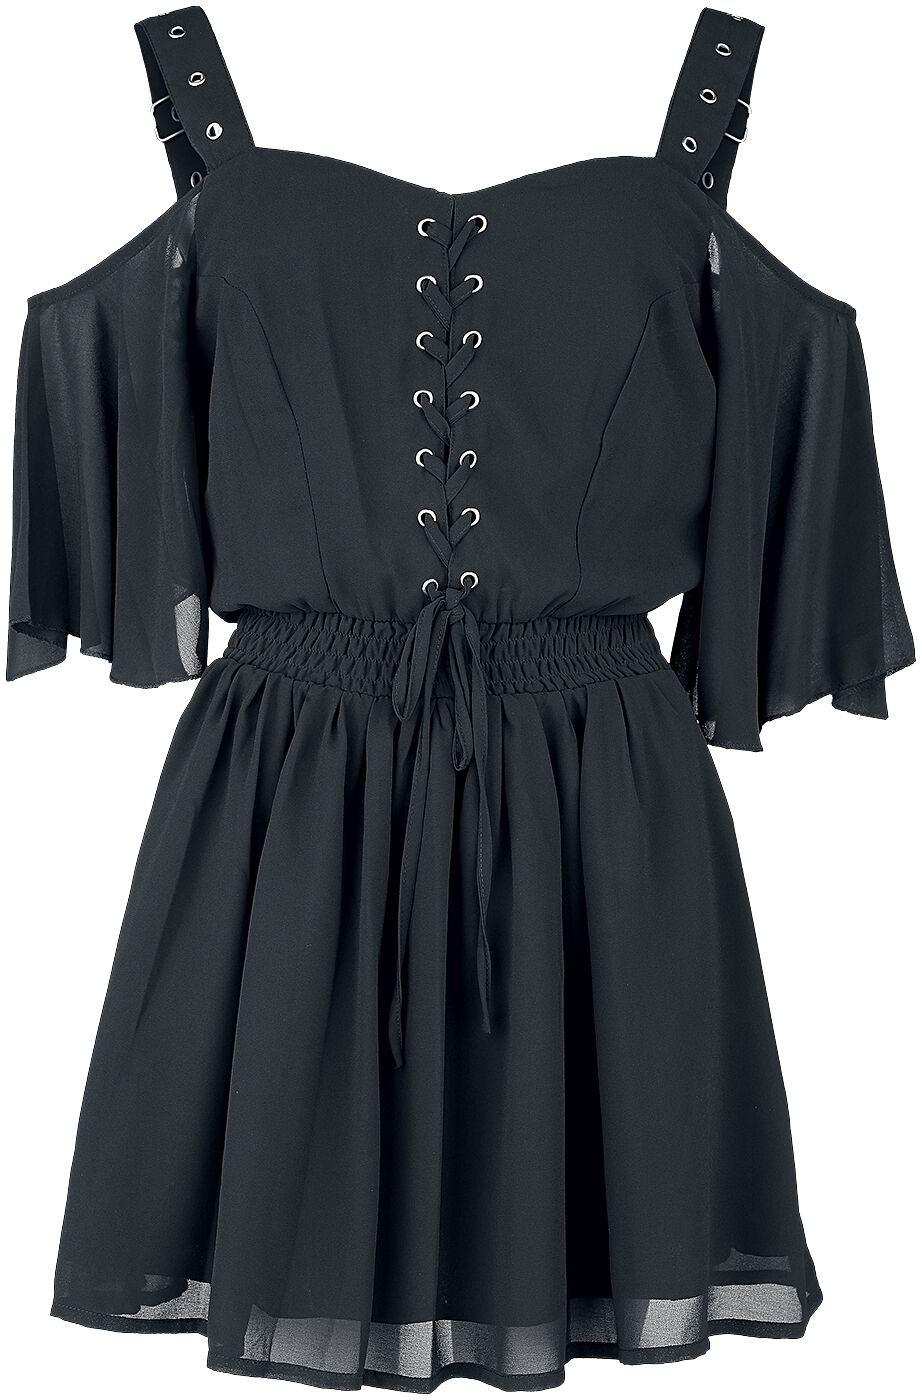 Poizen Industries - Gothic Kurzes Kleid - Catastrophe Dress - XS bis 4XL - für Damen - Größe 4XL - schwarz